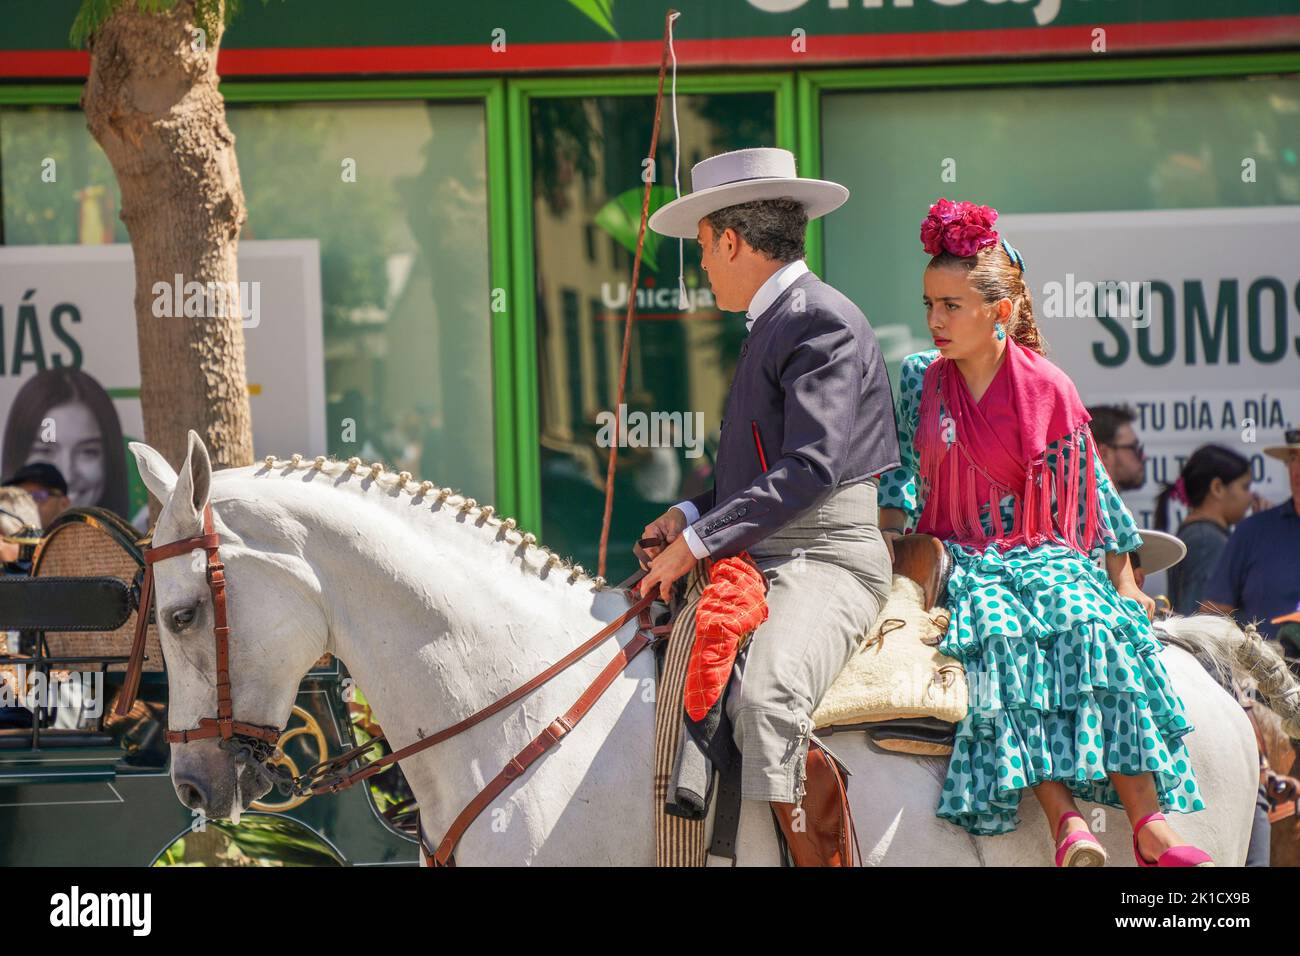 Spanisches Paar in traditionellem Outfit auf Pferden, während des jährlichen Pferdetages. Fuengirola, Andalusien, Costa del Sol, Spanien. Stockfoto